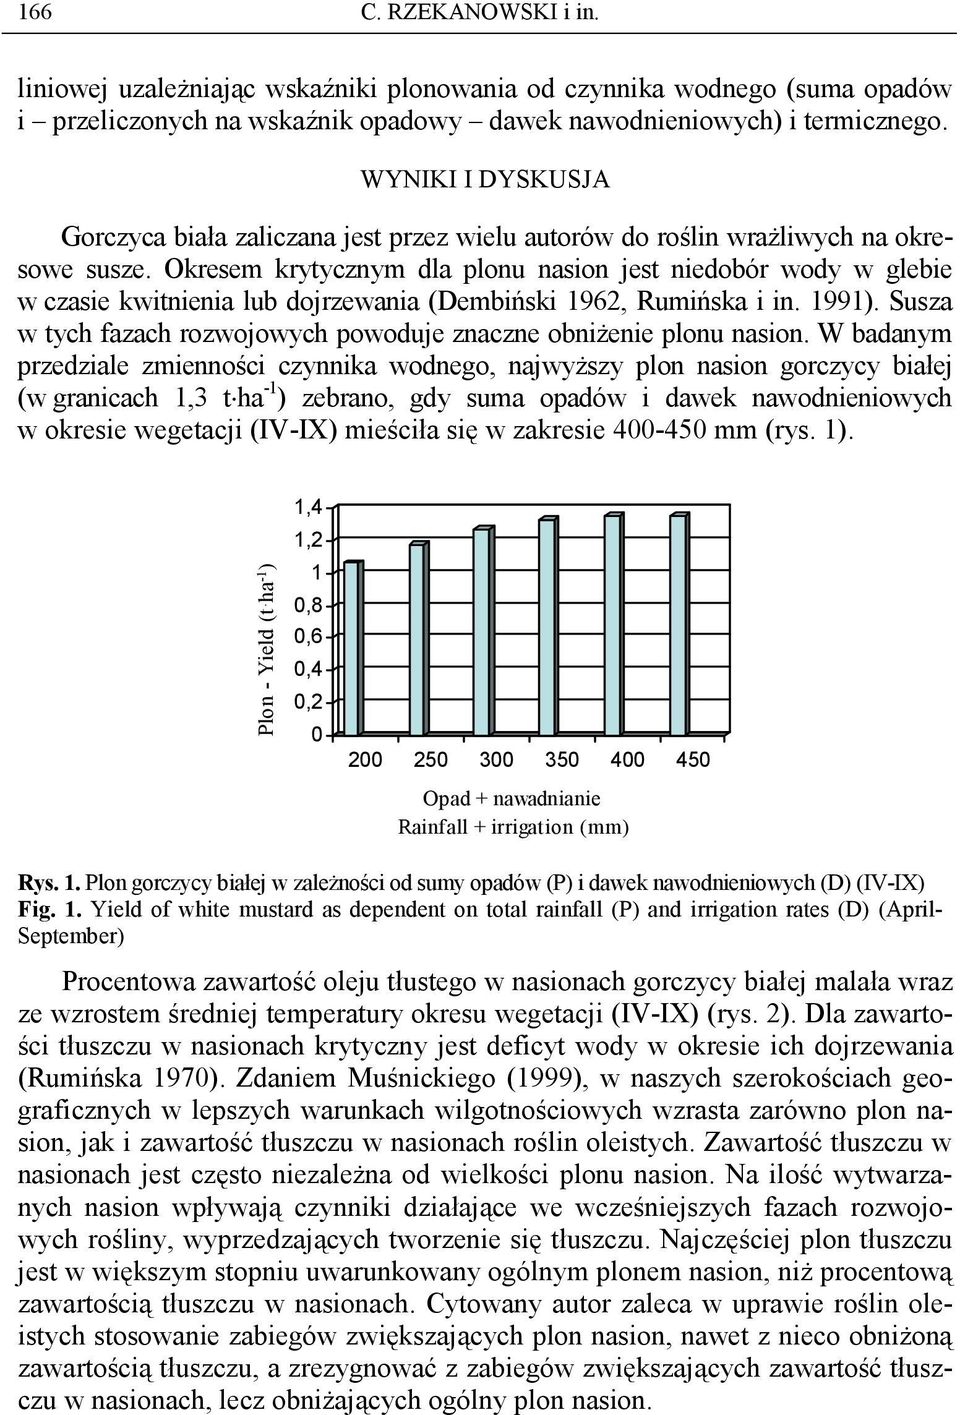 Okresem krytycznym dla plonu nasion jest niedobór wody w glebie w czasie kwitnienia lub dojrzewania (Dembiński 1962, Rumińska i in. 1991).